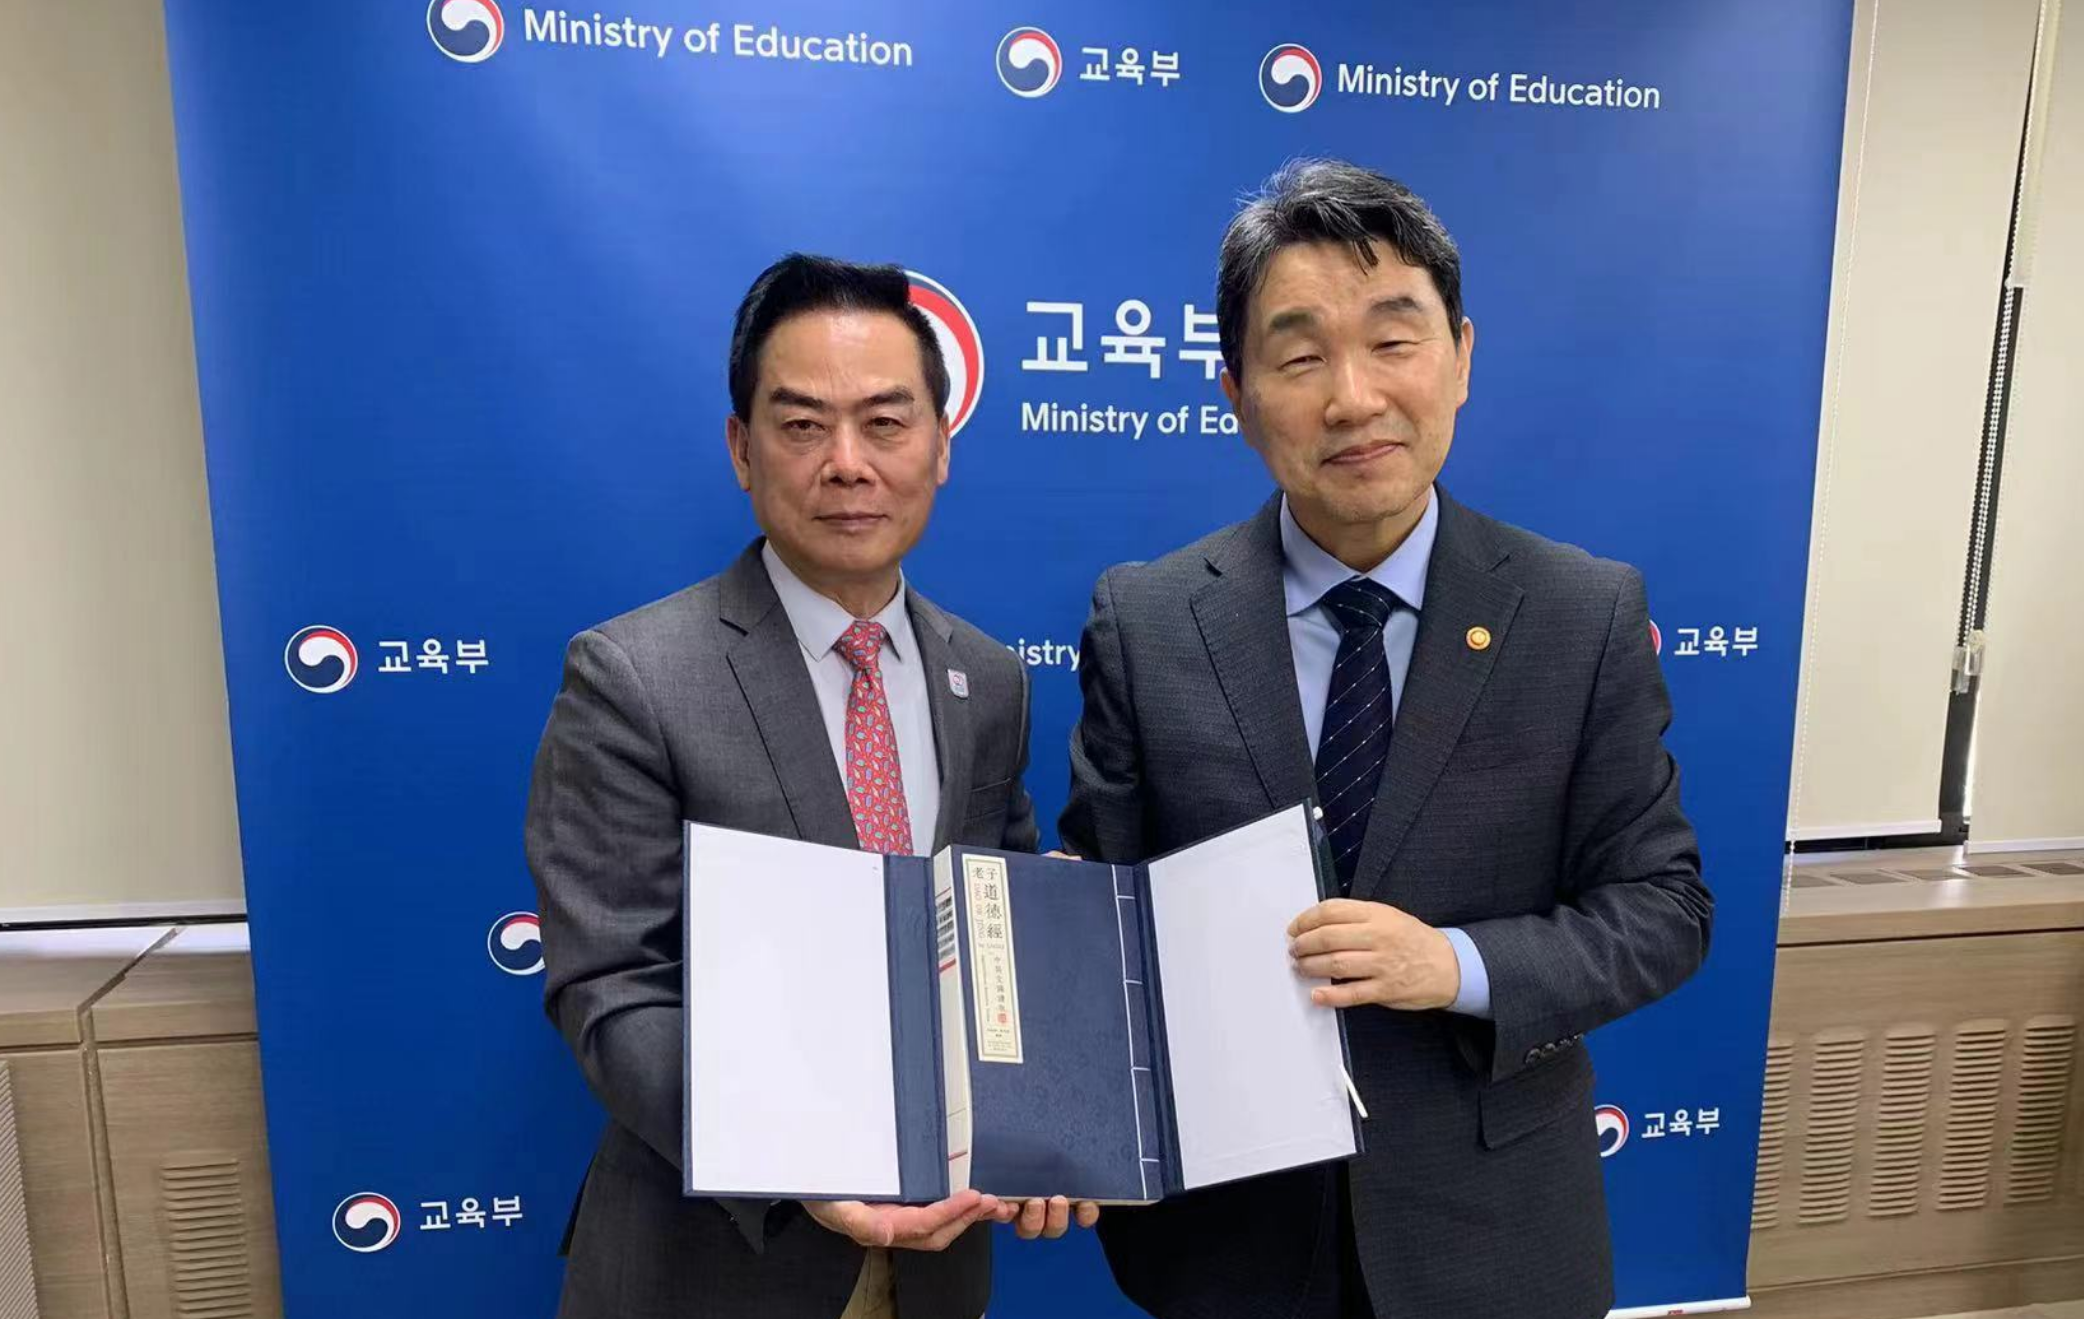 郑州西亚斯学院创办人、理事长陈肖纯博士与韩国副总理兼教育部长李柱镐